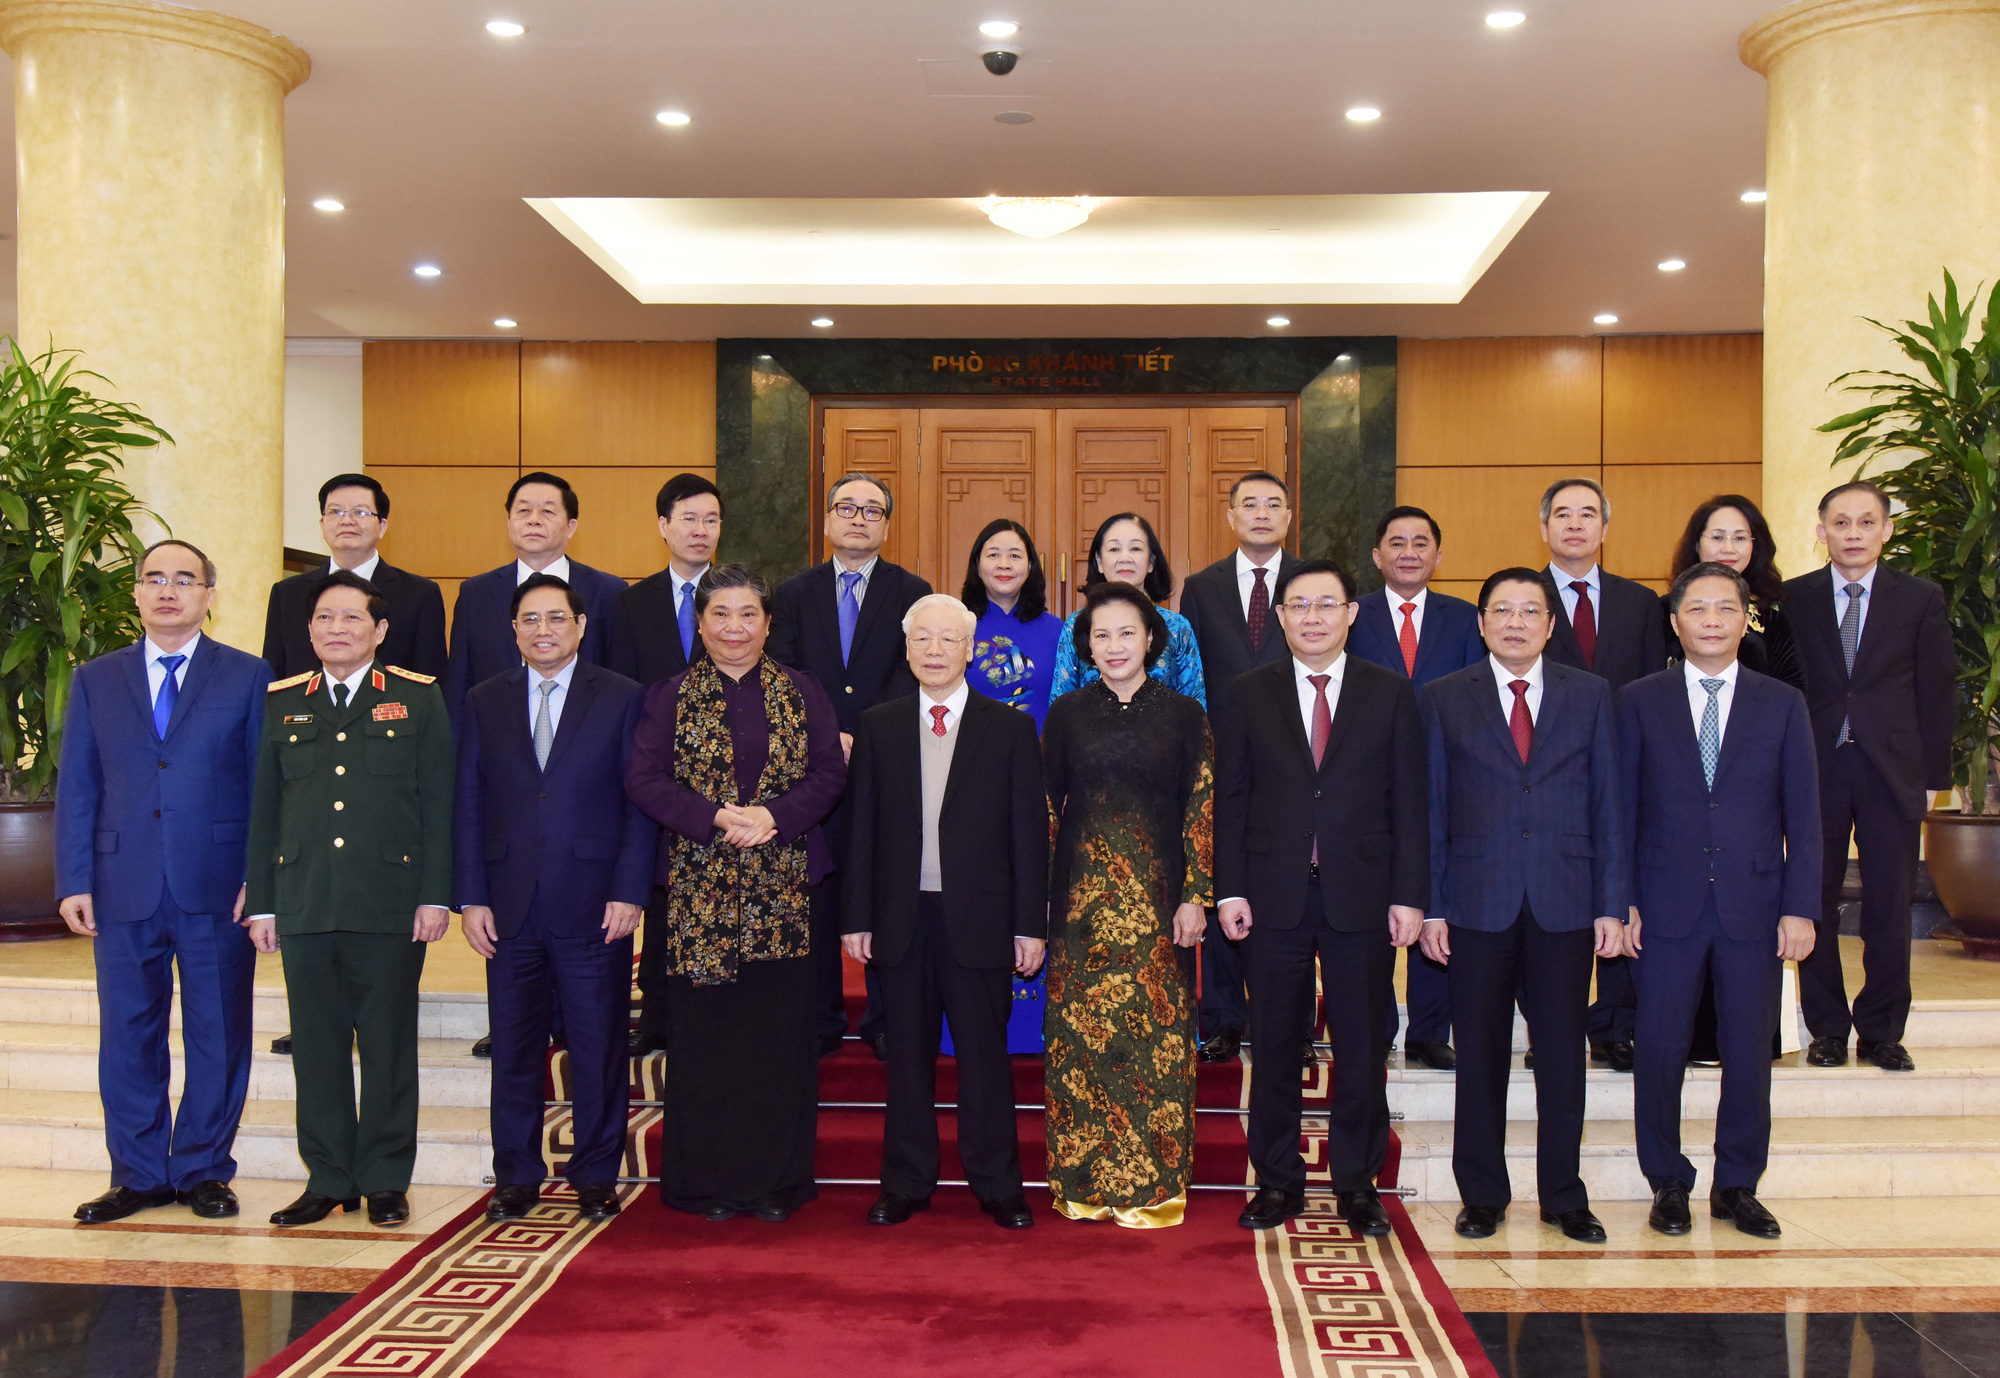 Tổng Bí thư Nguyễn Phú Trọng trao quyết định nghỉ chế độ cho các Ủy viên Bộ Chính trị khóa XII không tái cử - Ảnh 2.